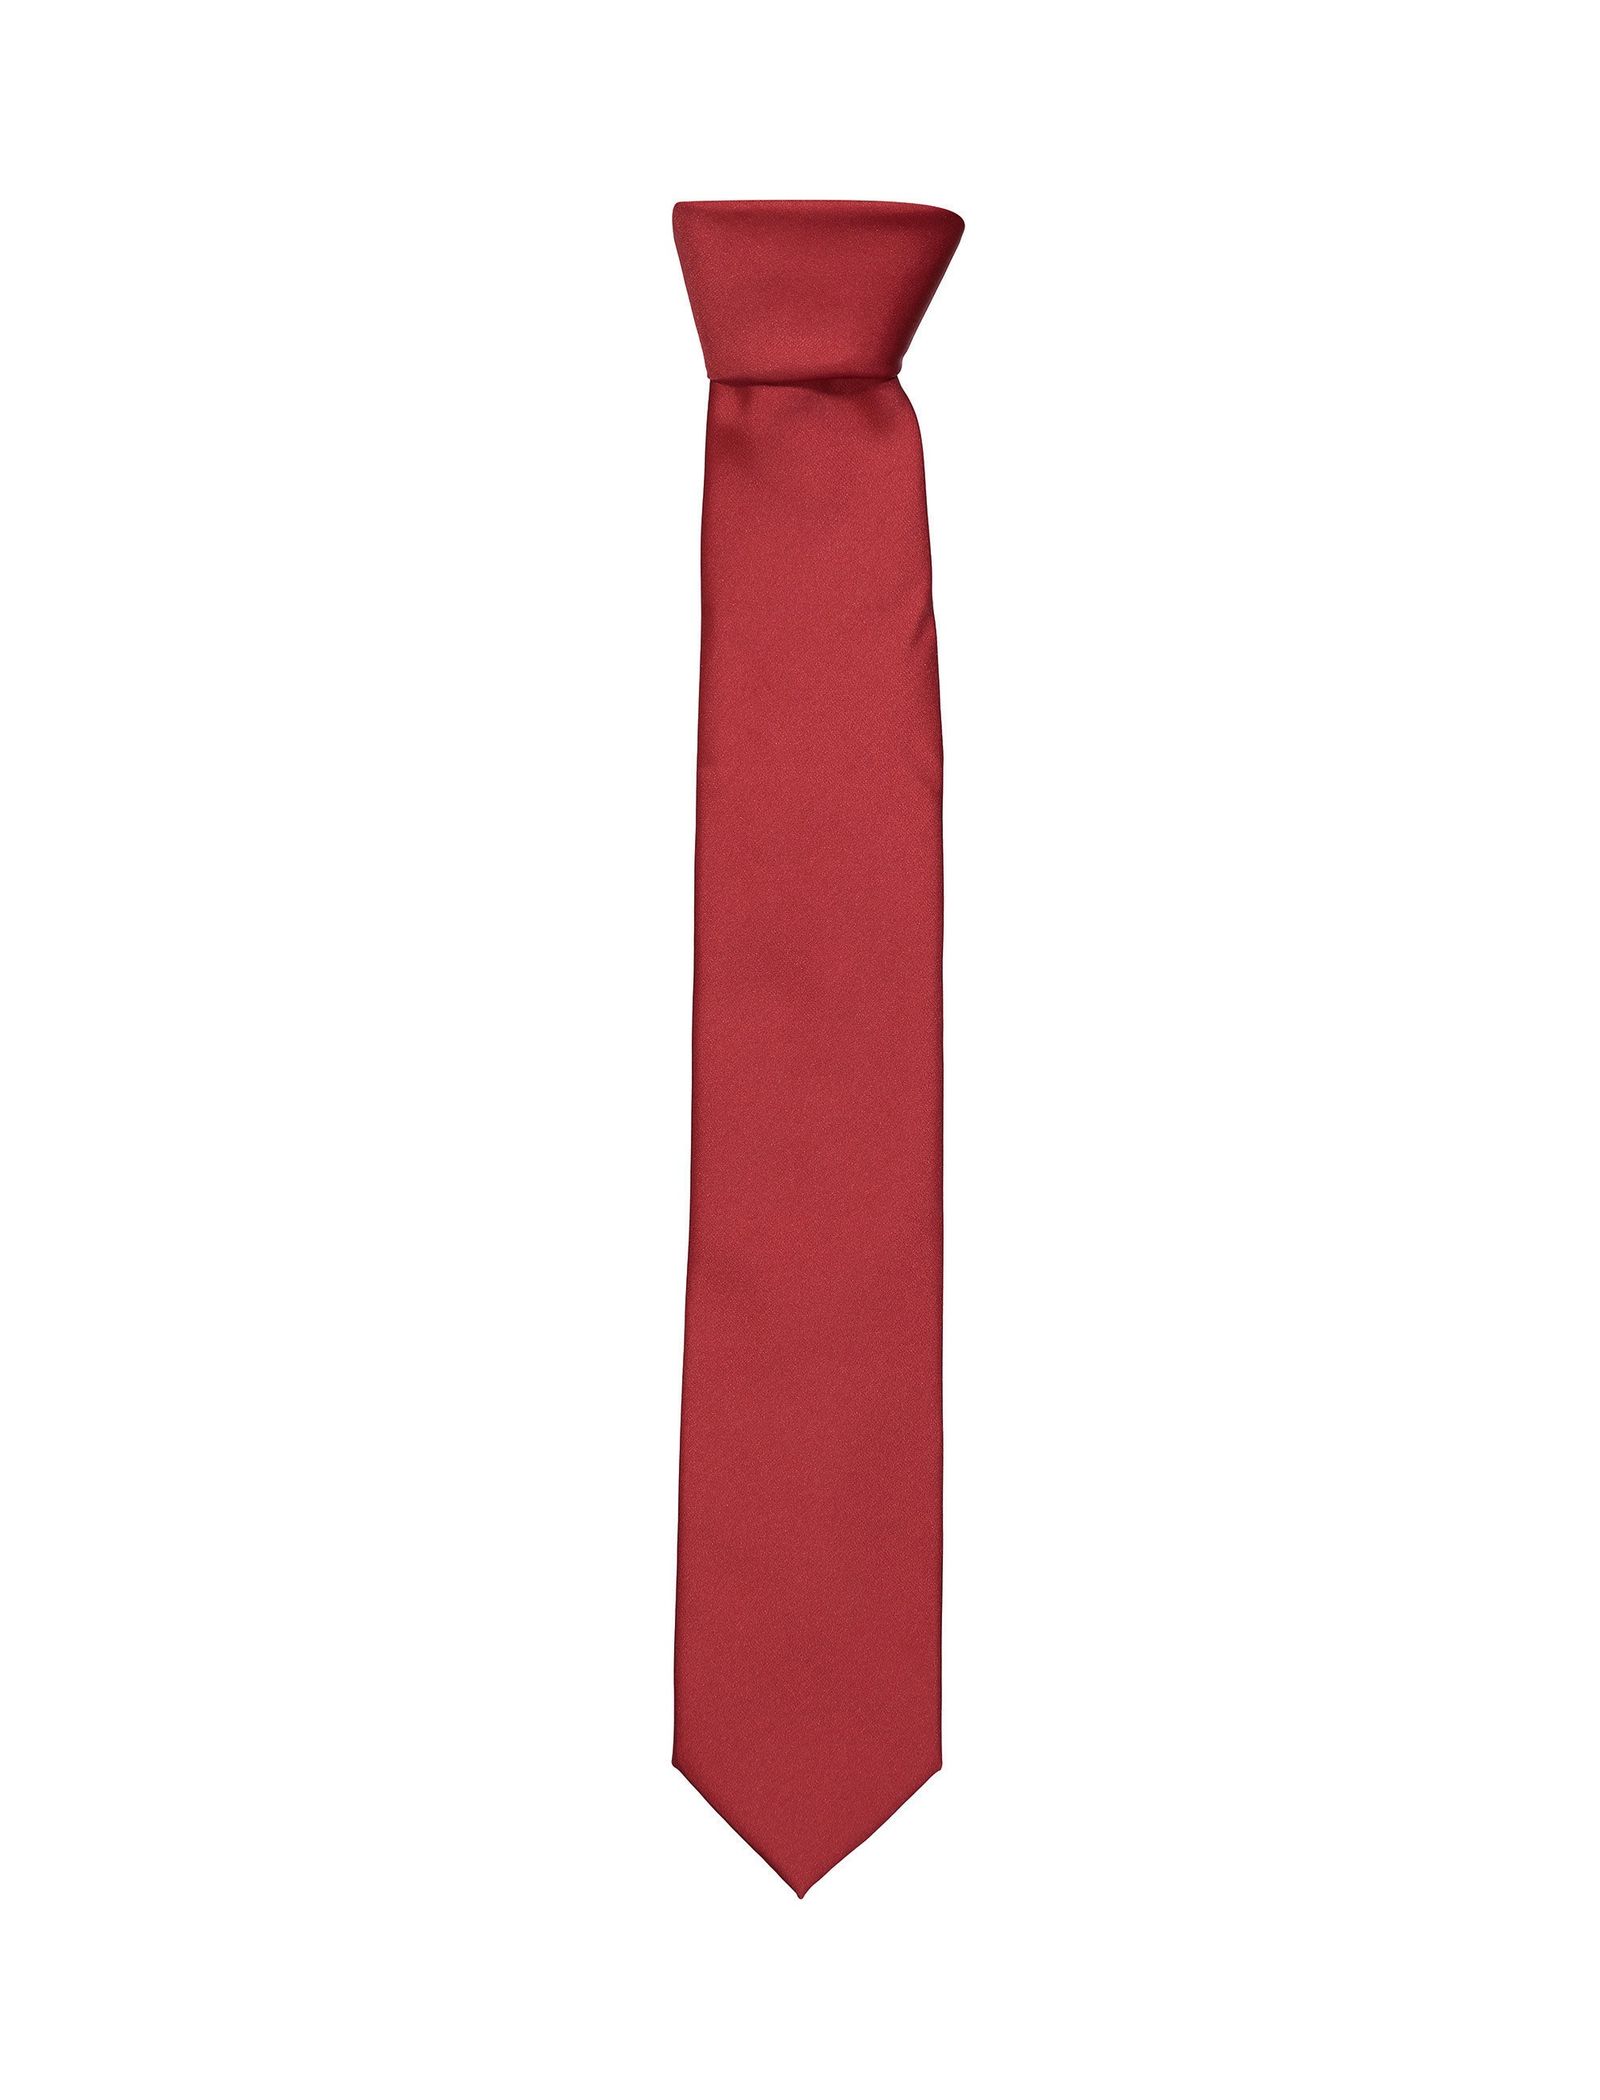 کراوات ساده مردانه - کالکشن تک سایز - قرمز - 2